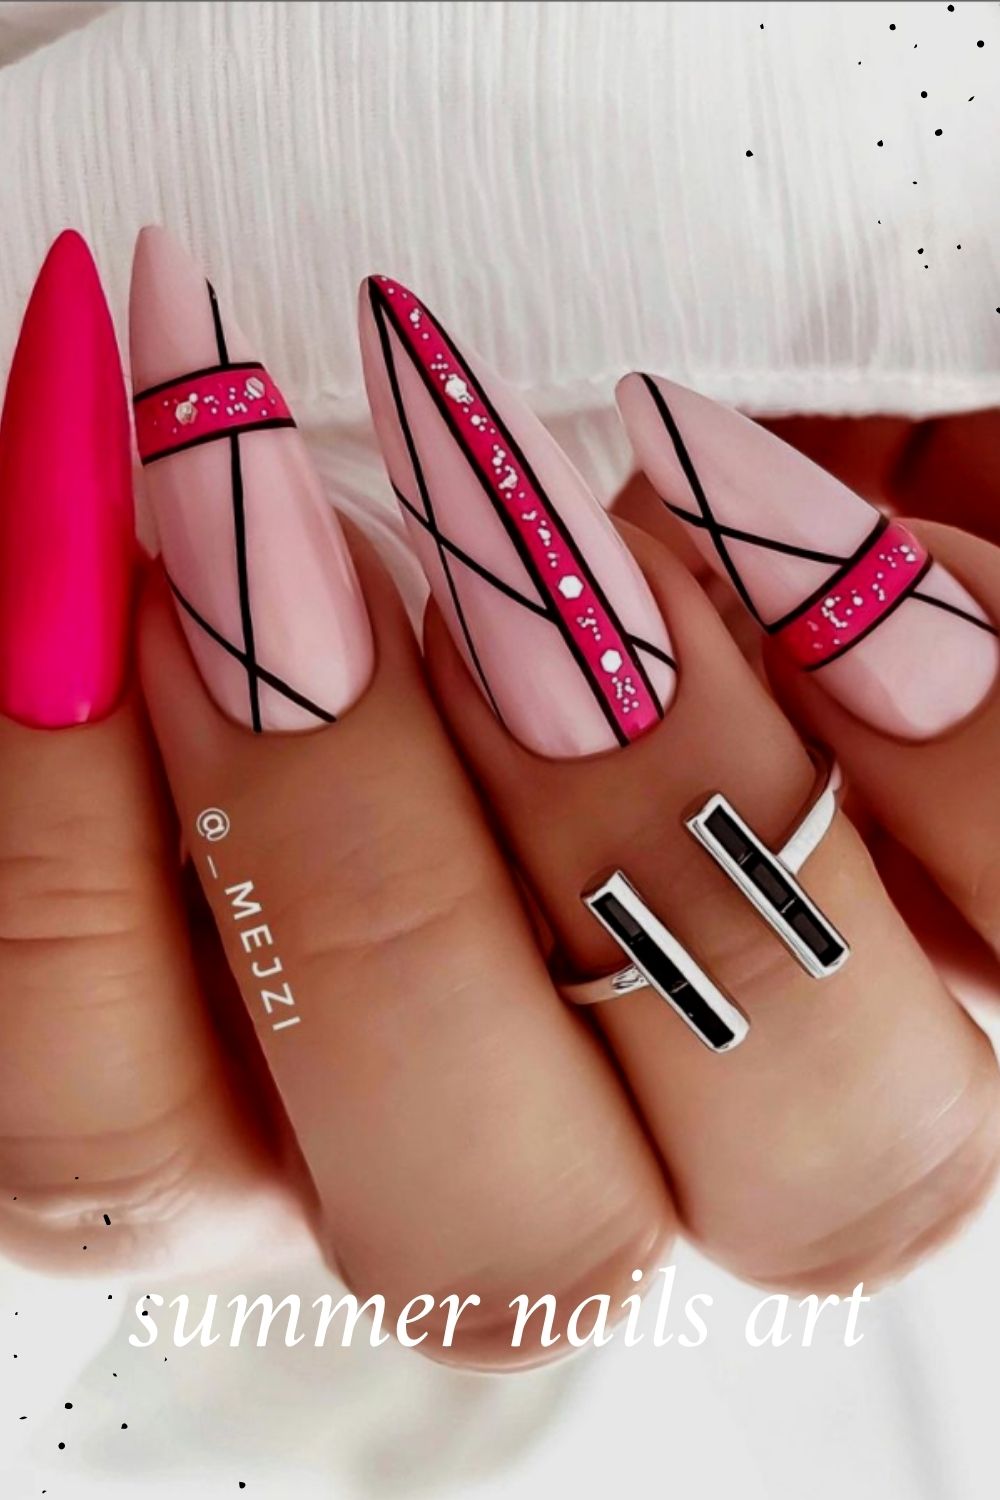 Cute summer nails art ideas